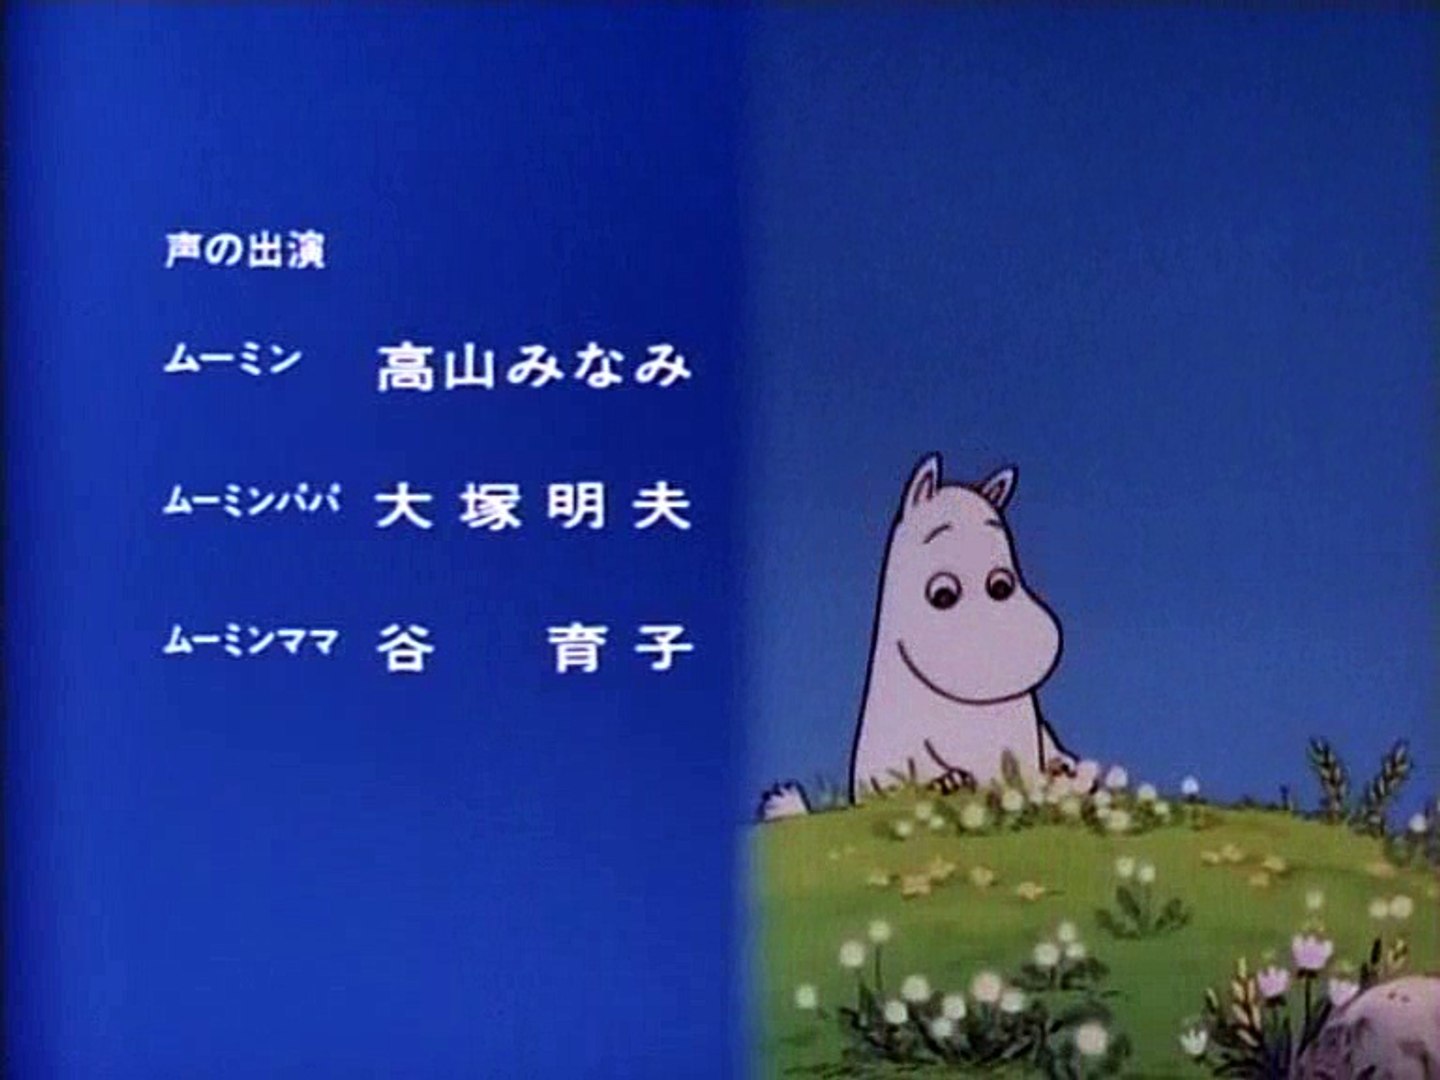 Tanoshii Mumin Ikka 1990 Japanese Ending 2 Video Dailymotion